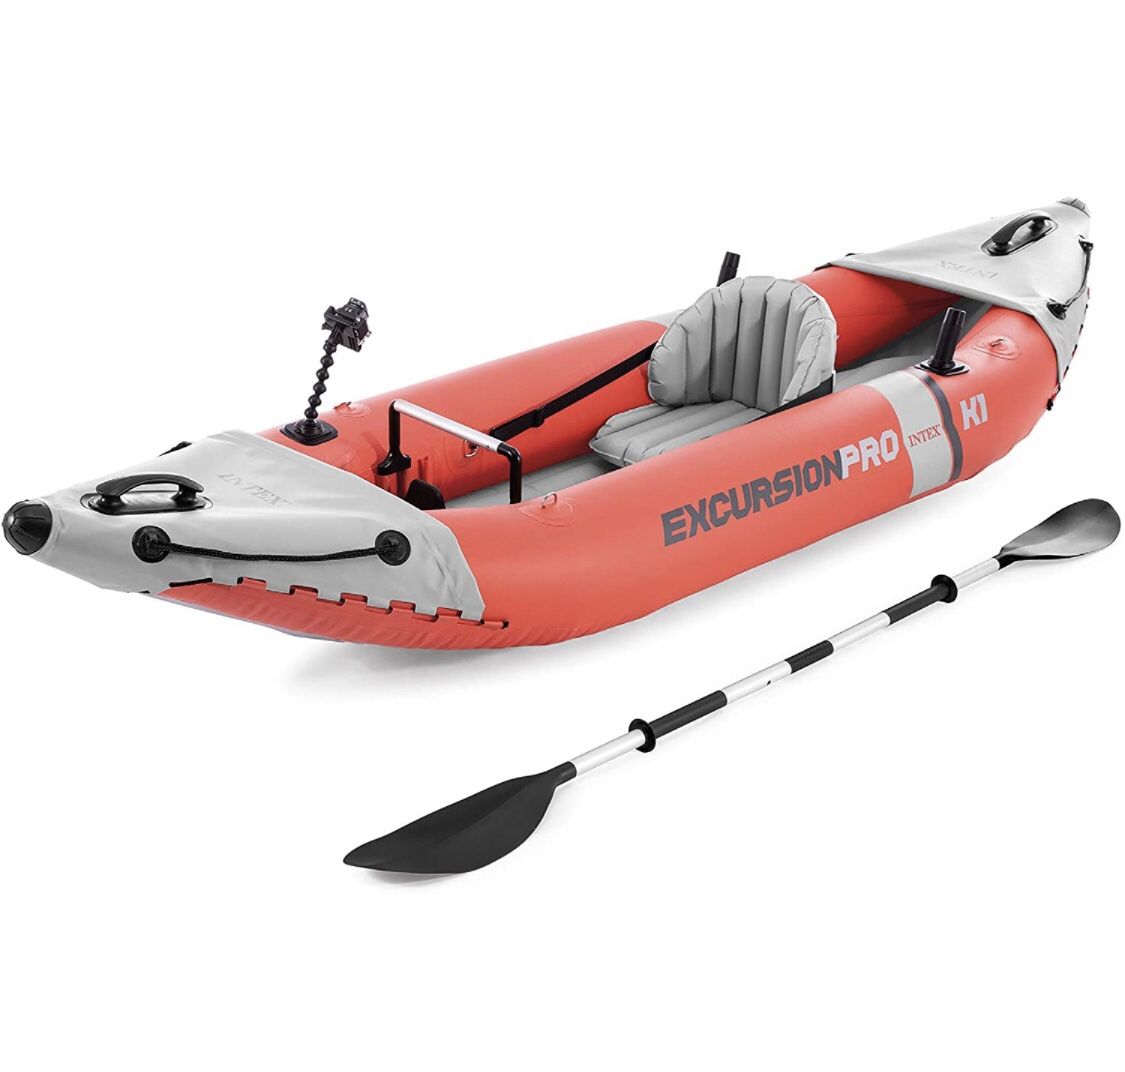 Intex K1 Excursion Pro Inflatable Kayak